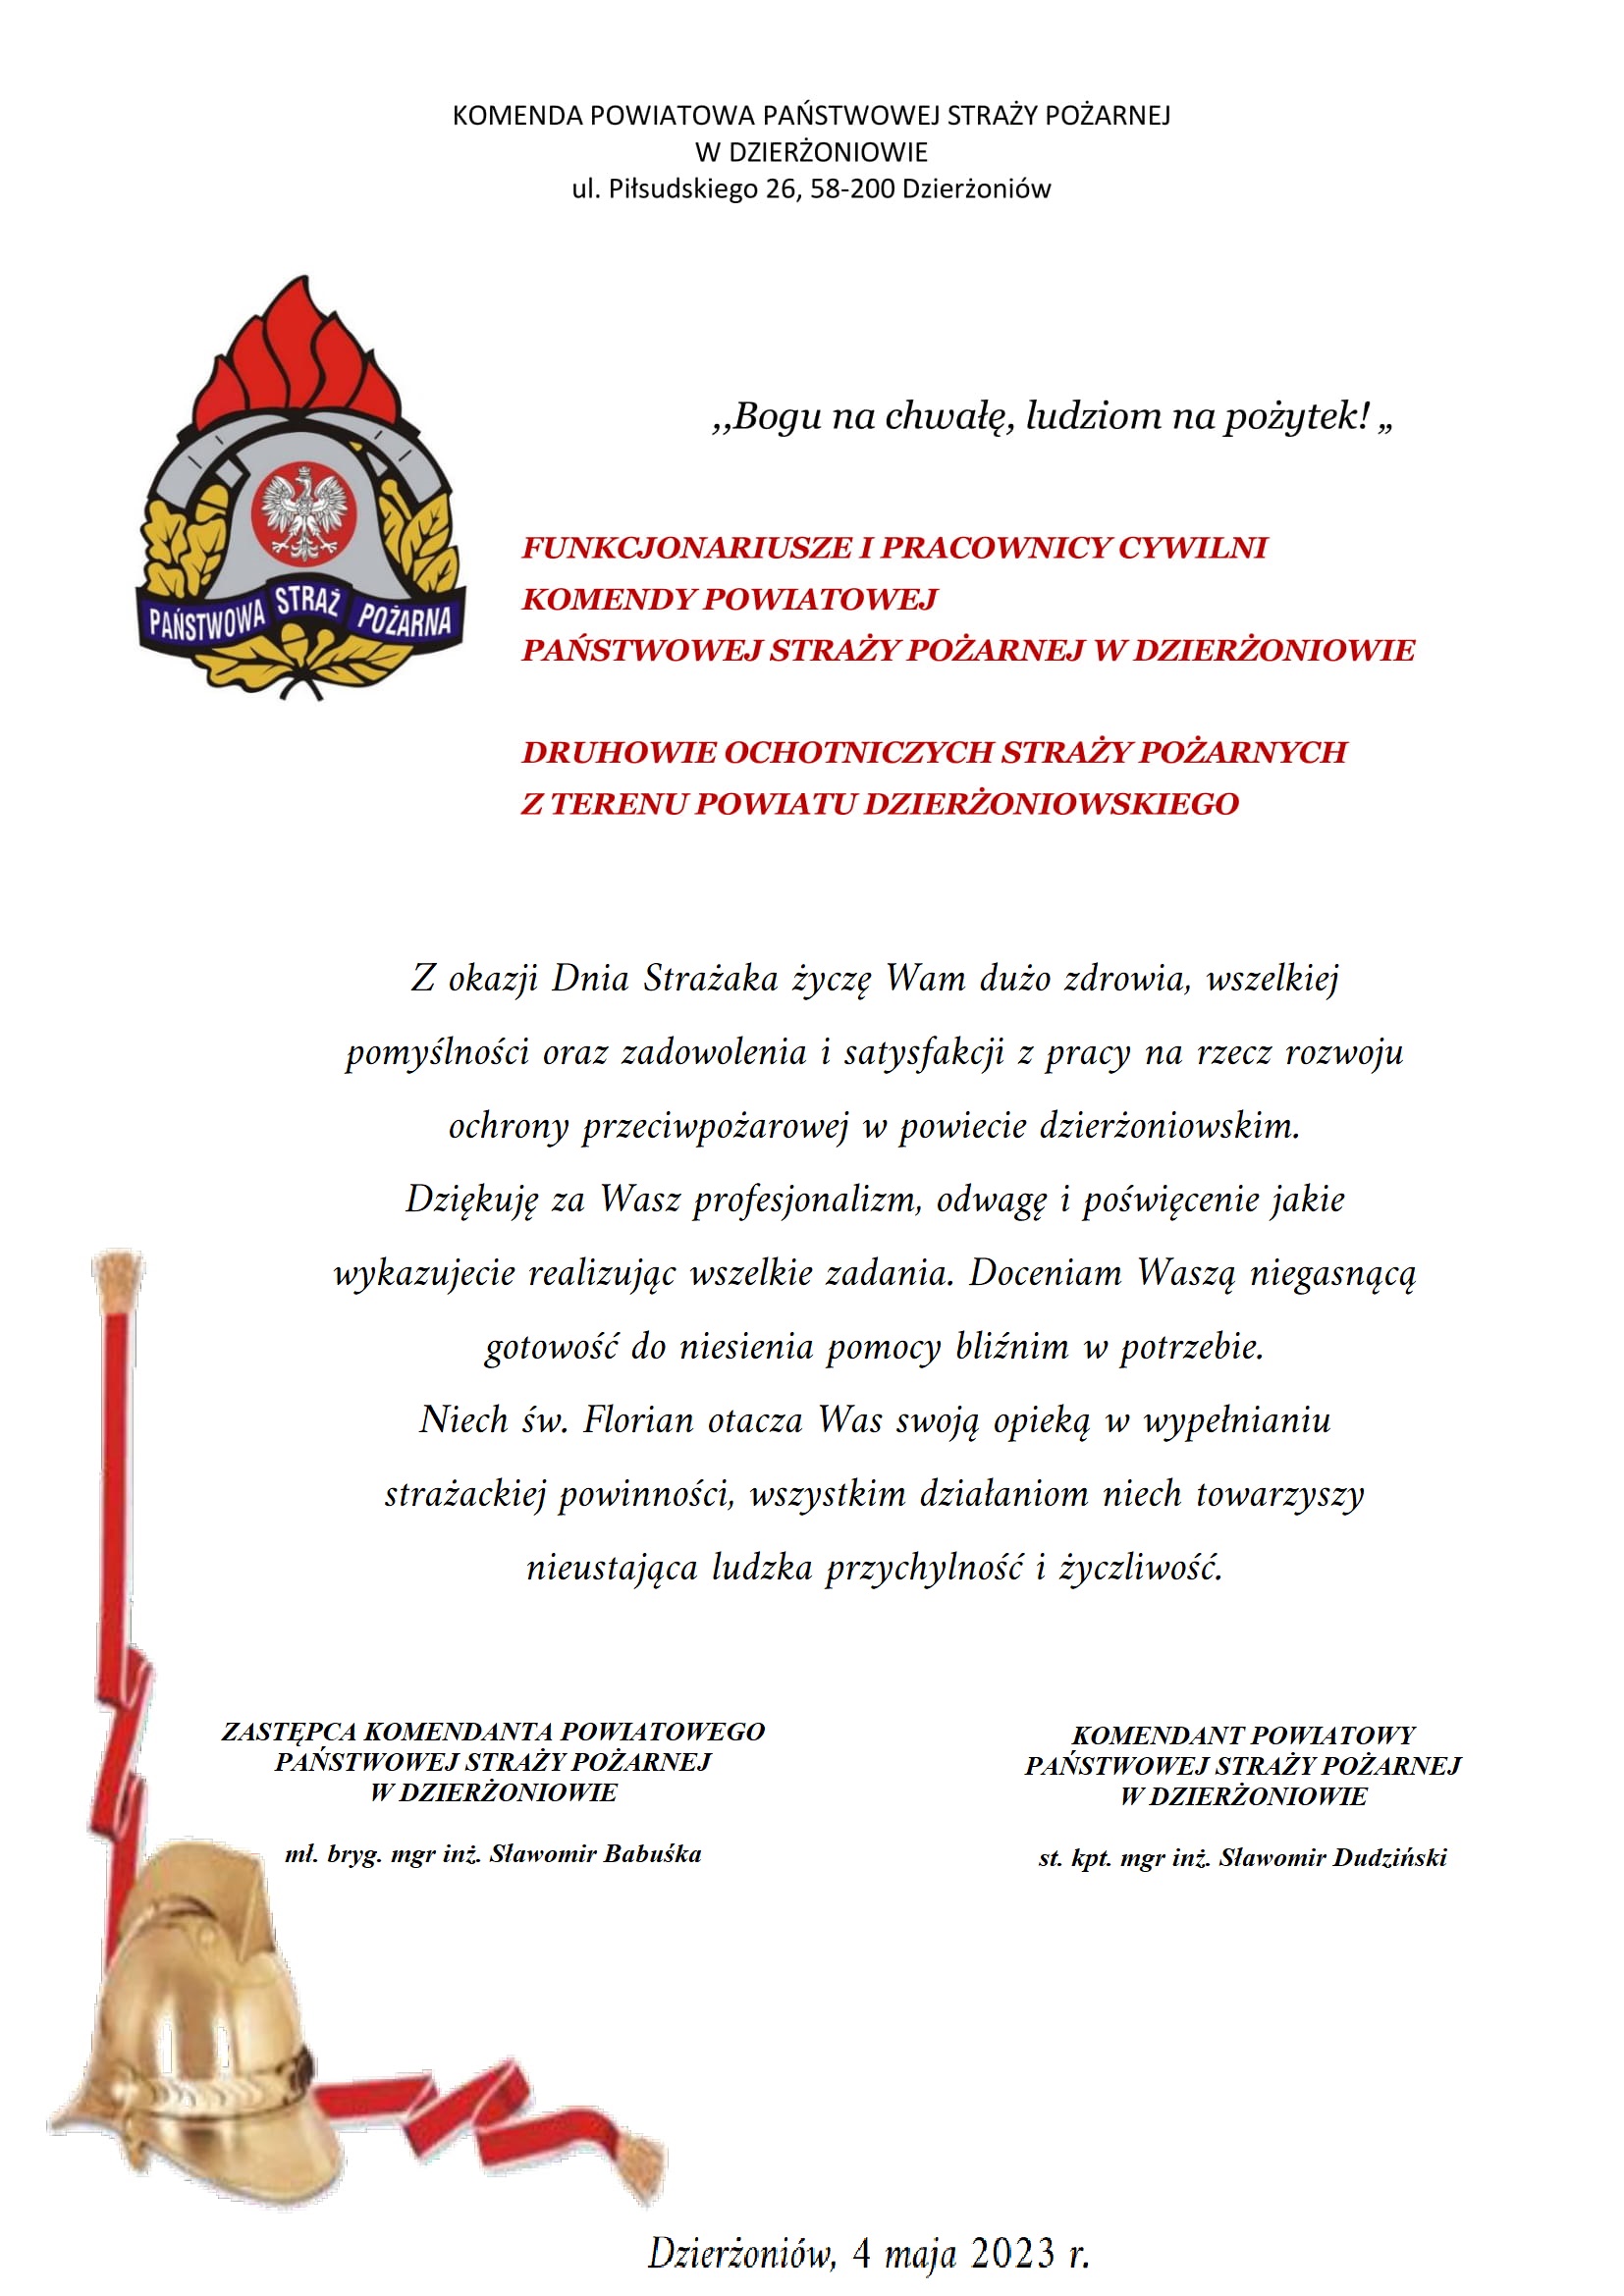 życzenia KP PSP w Dzierżoniowie z okazji dnia strażaka